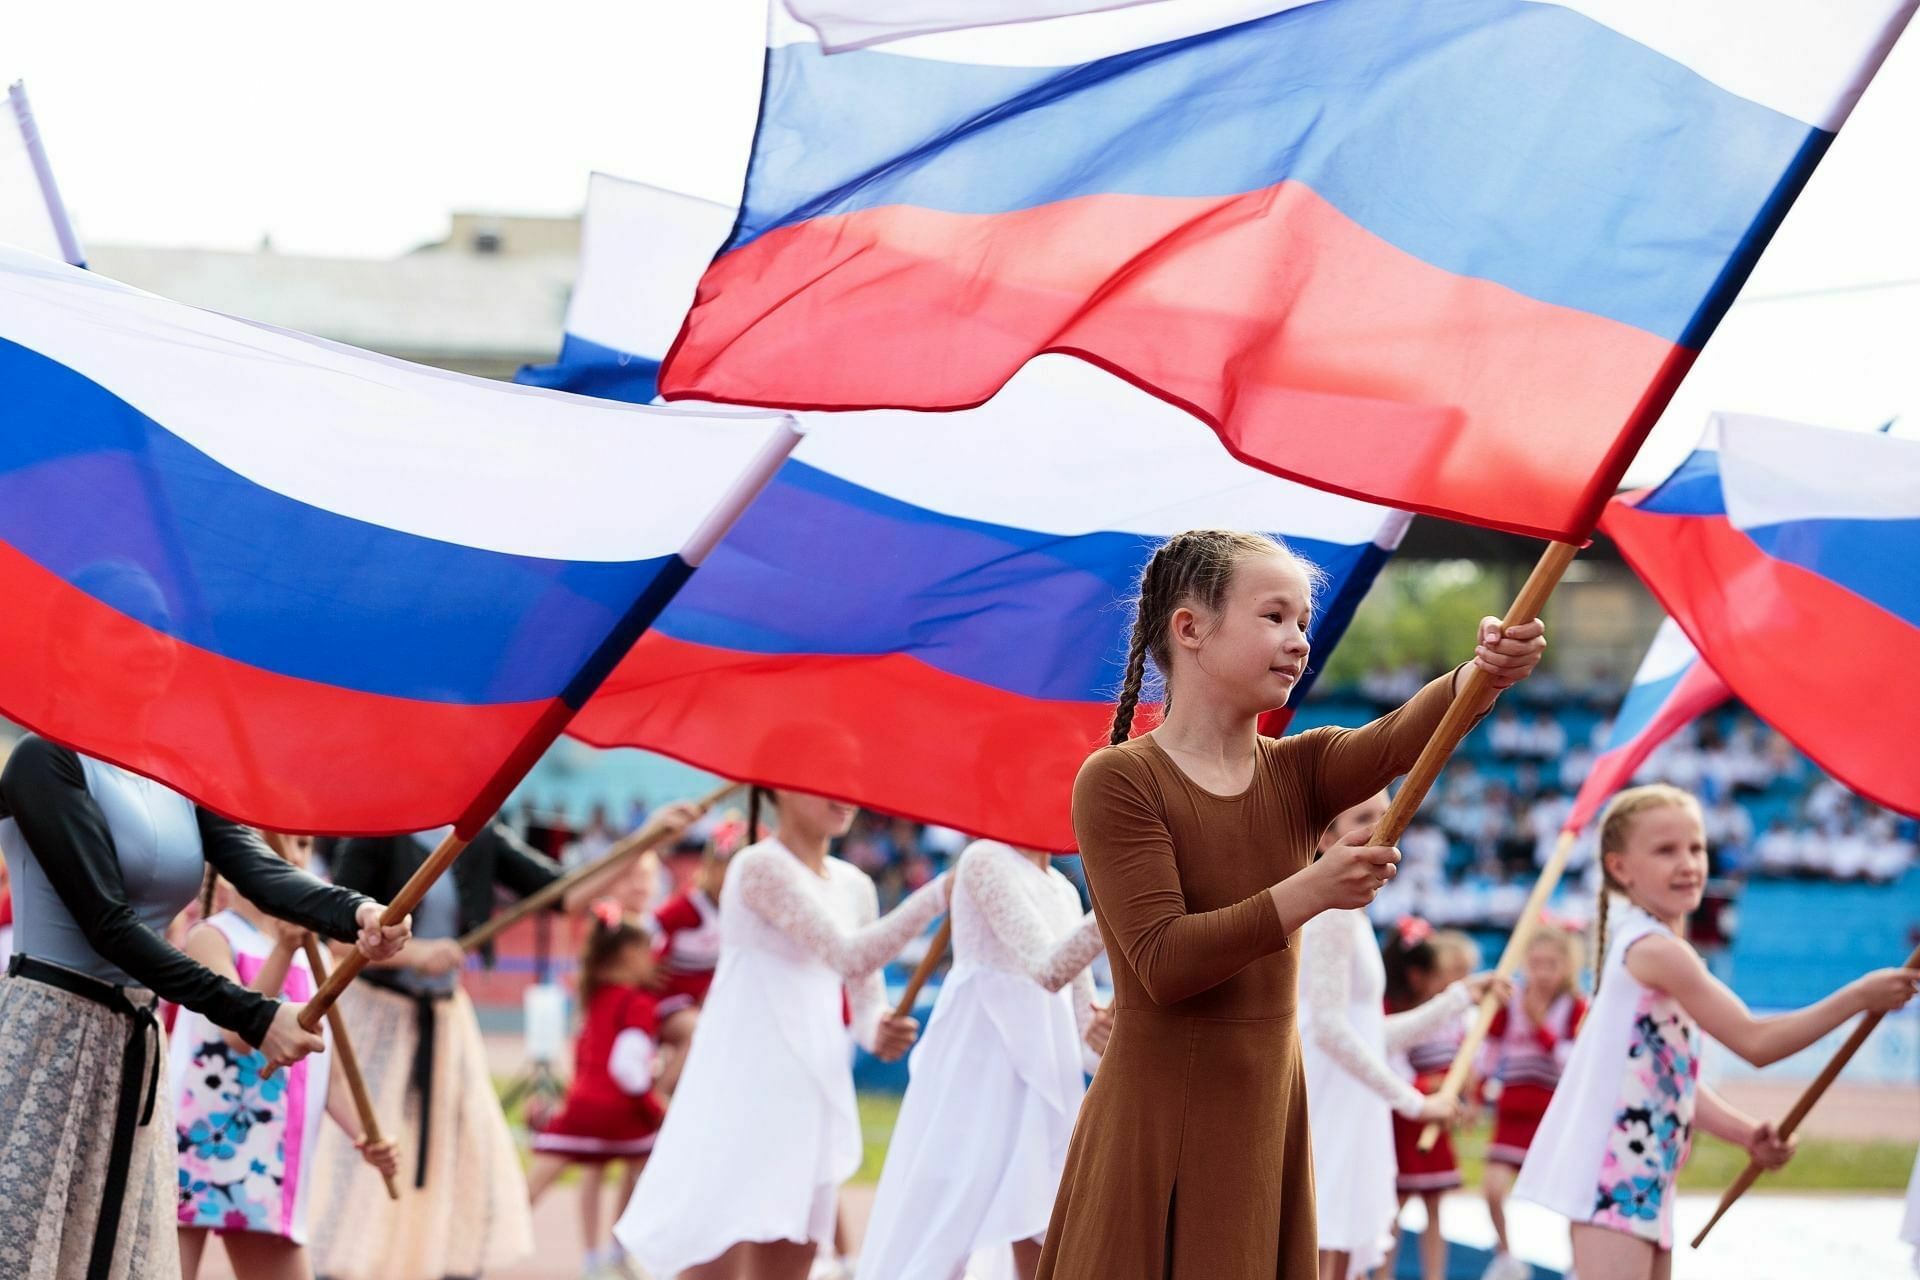 Гордые за страну россияне чувствуют себя более счастливыми - исследование